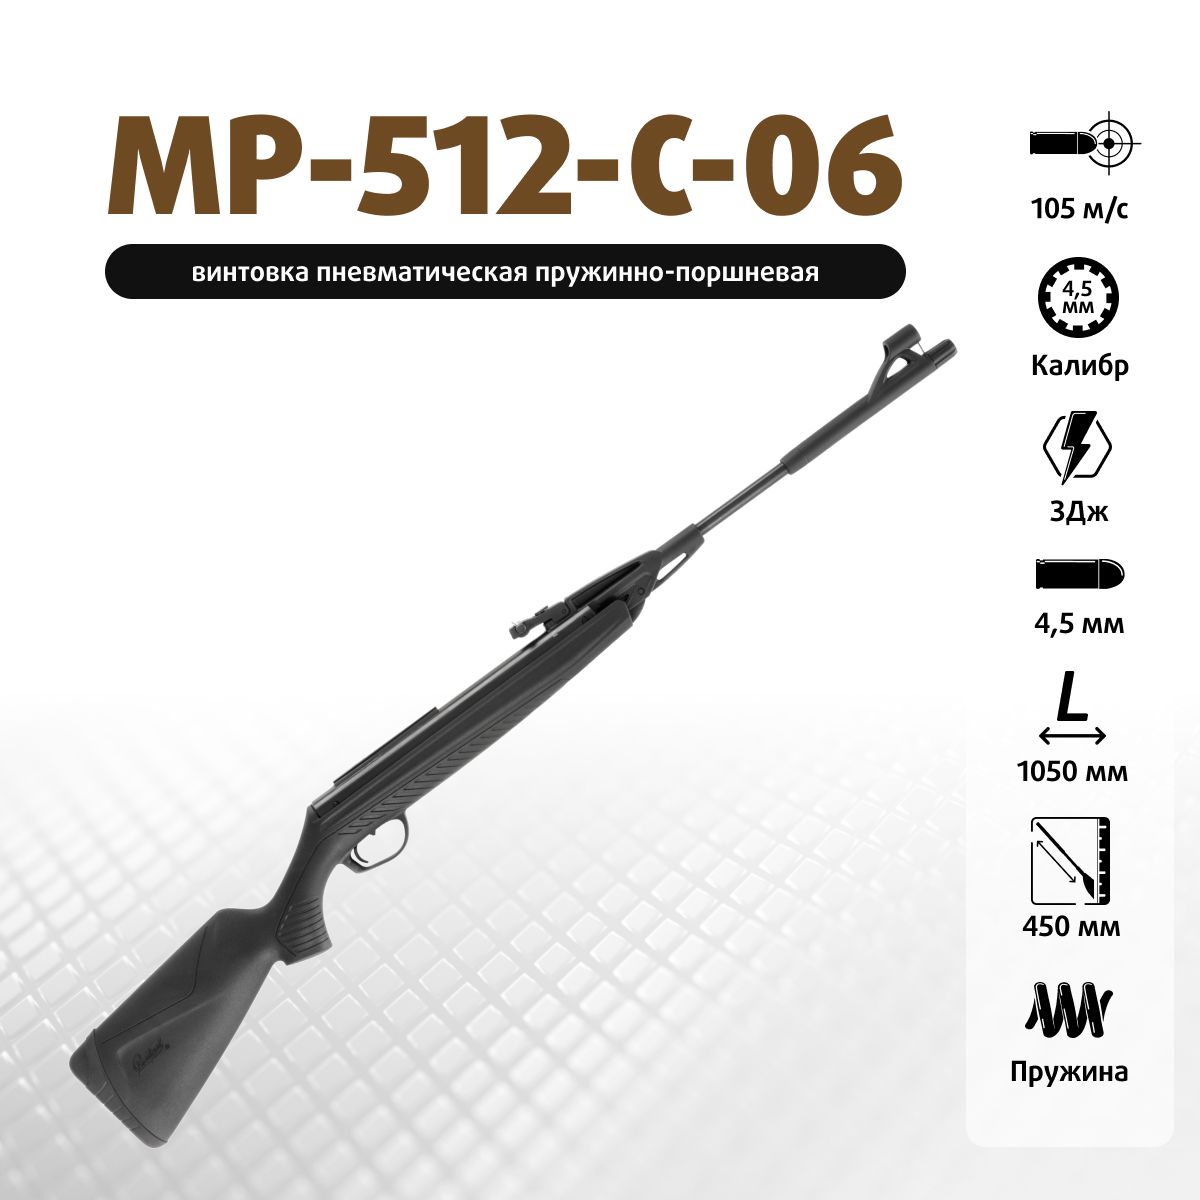 Пневматическая винтовка МР-512 Пластик